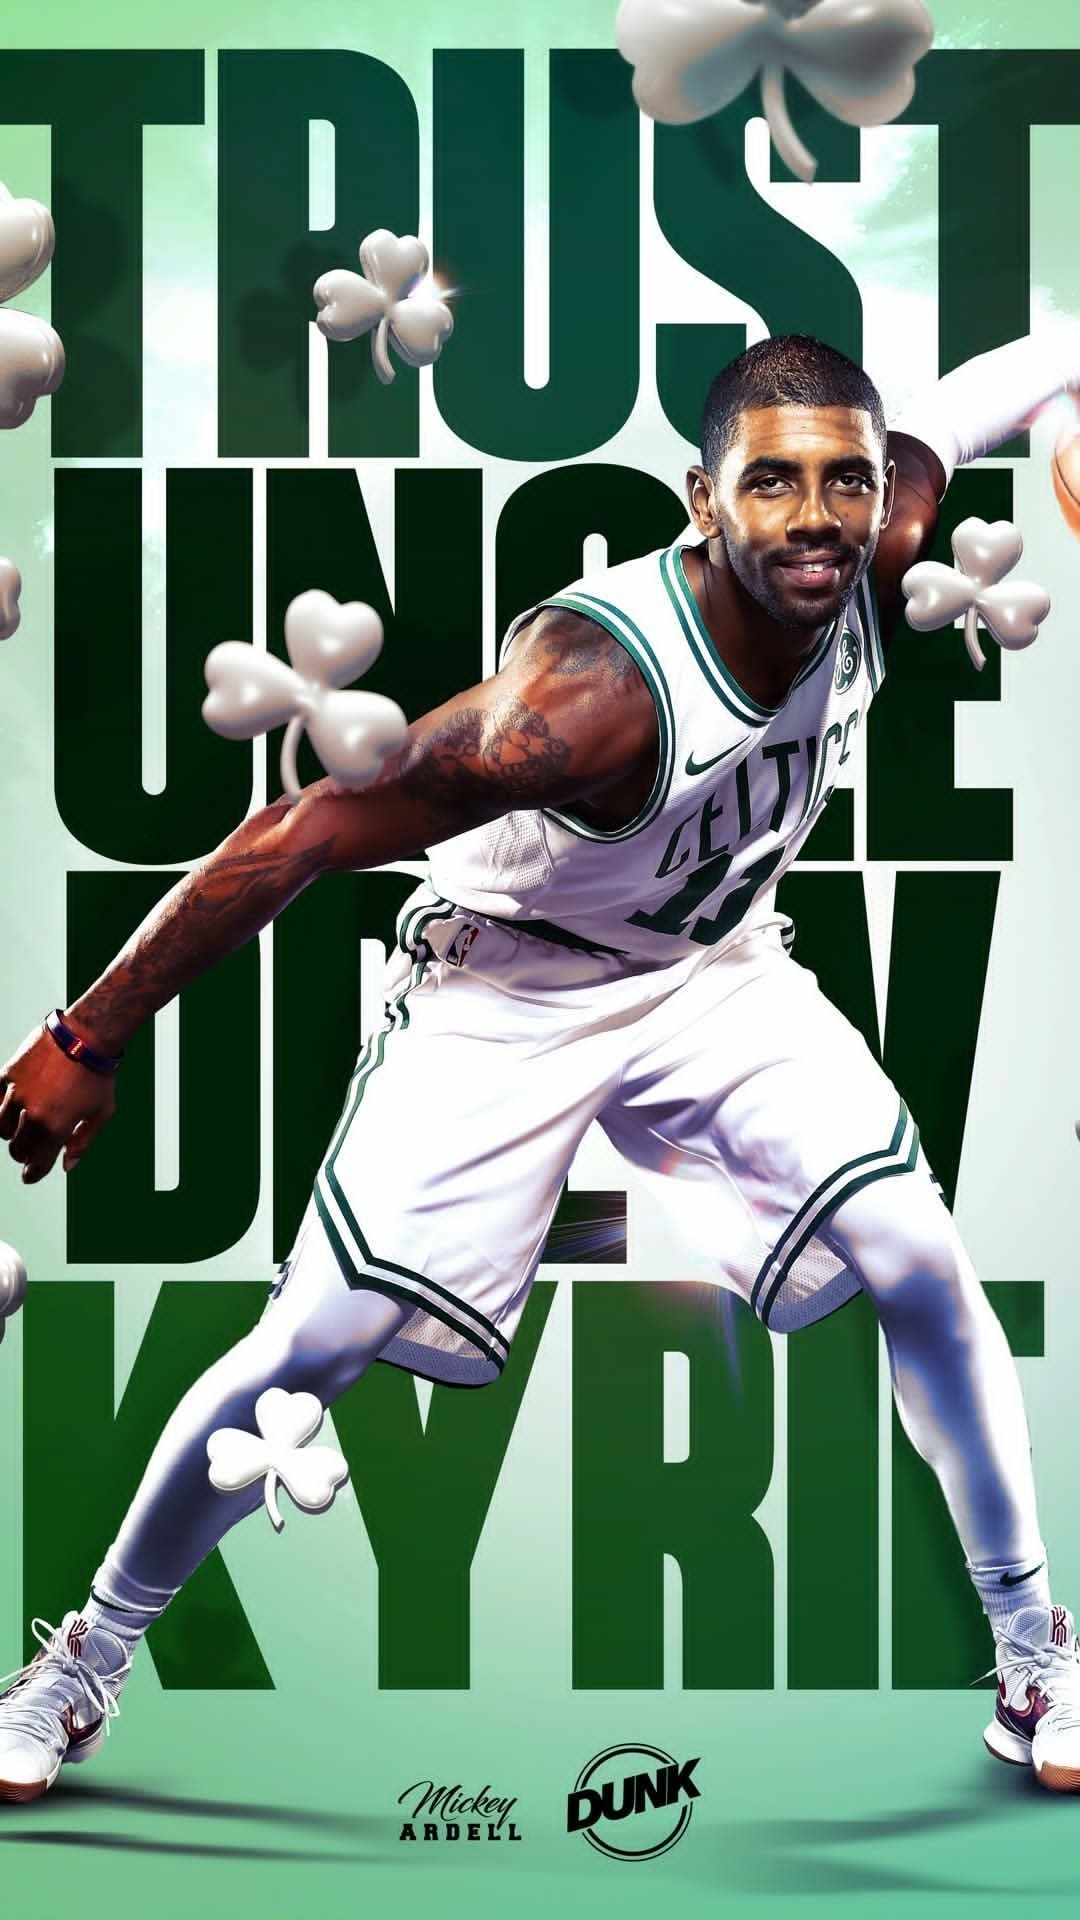 1080x1920 ... Interesting Ideas Kyrie Irving Wallpaper Basketball Pinterest Nba ...